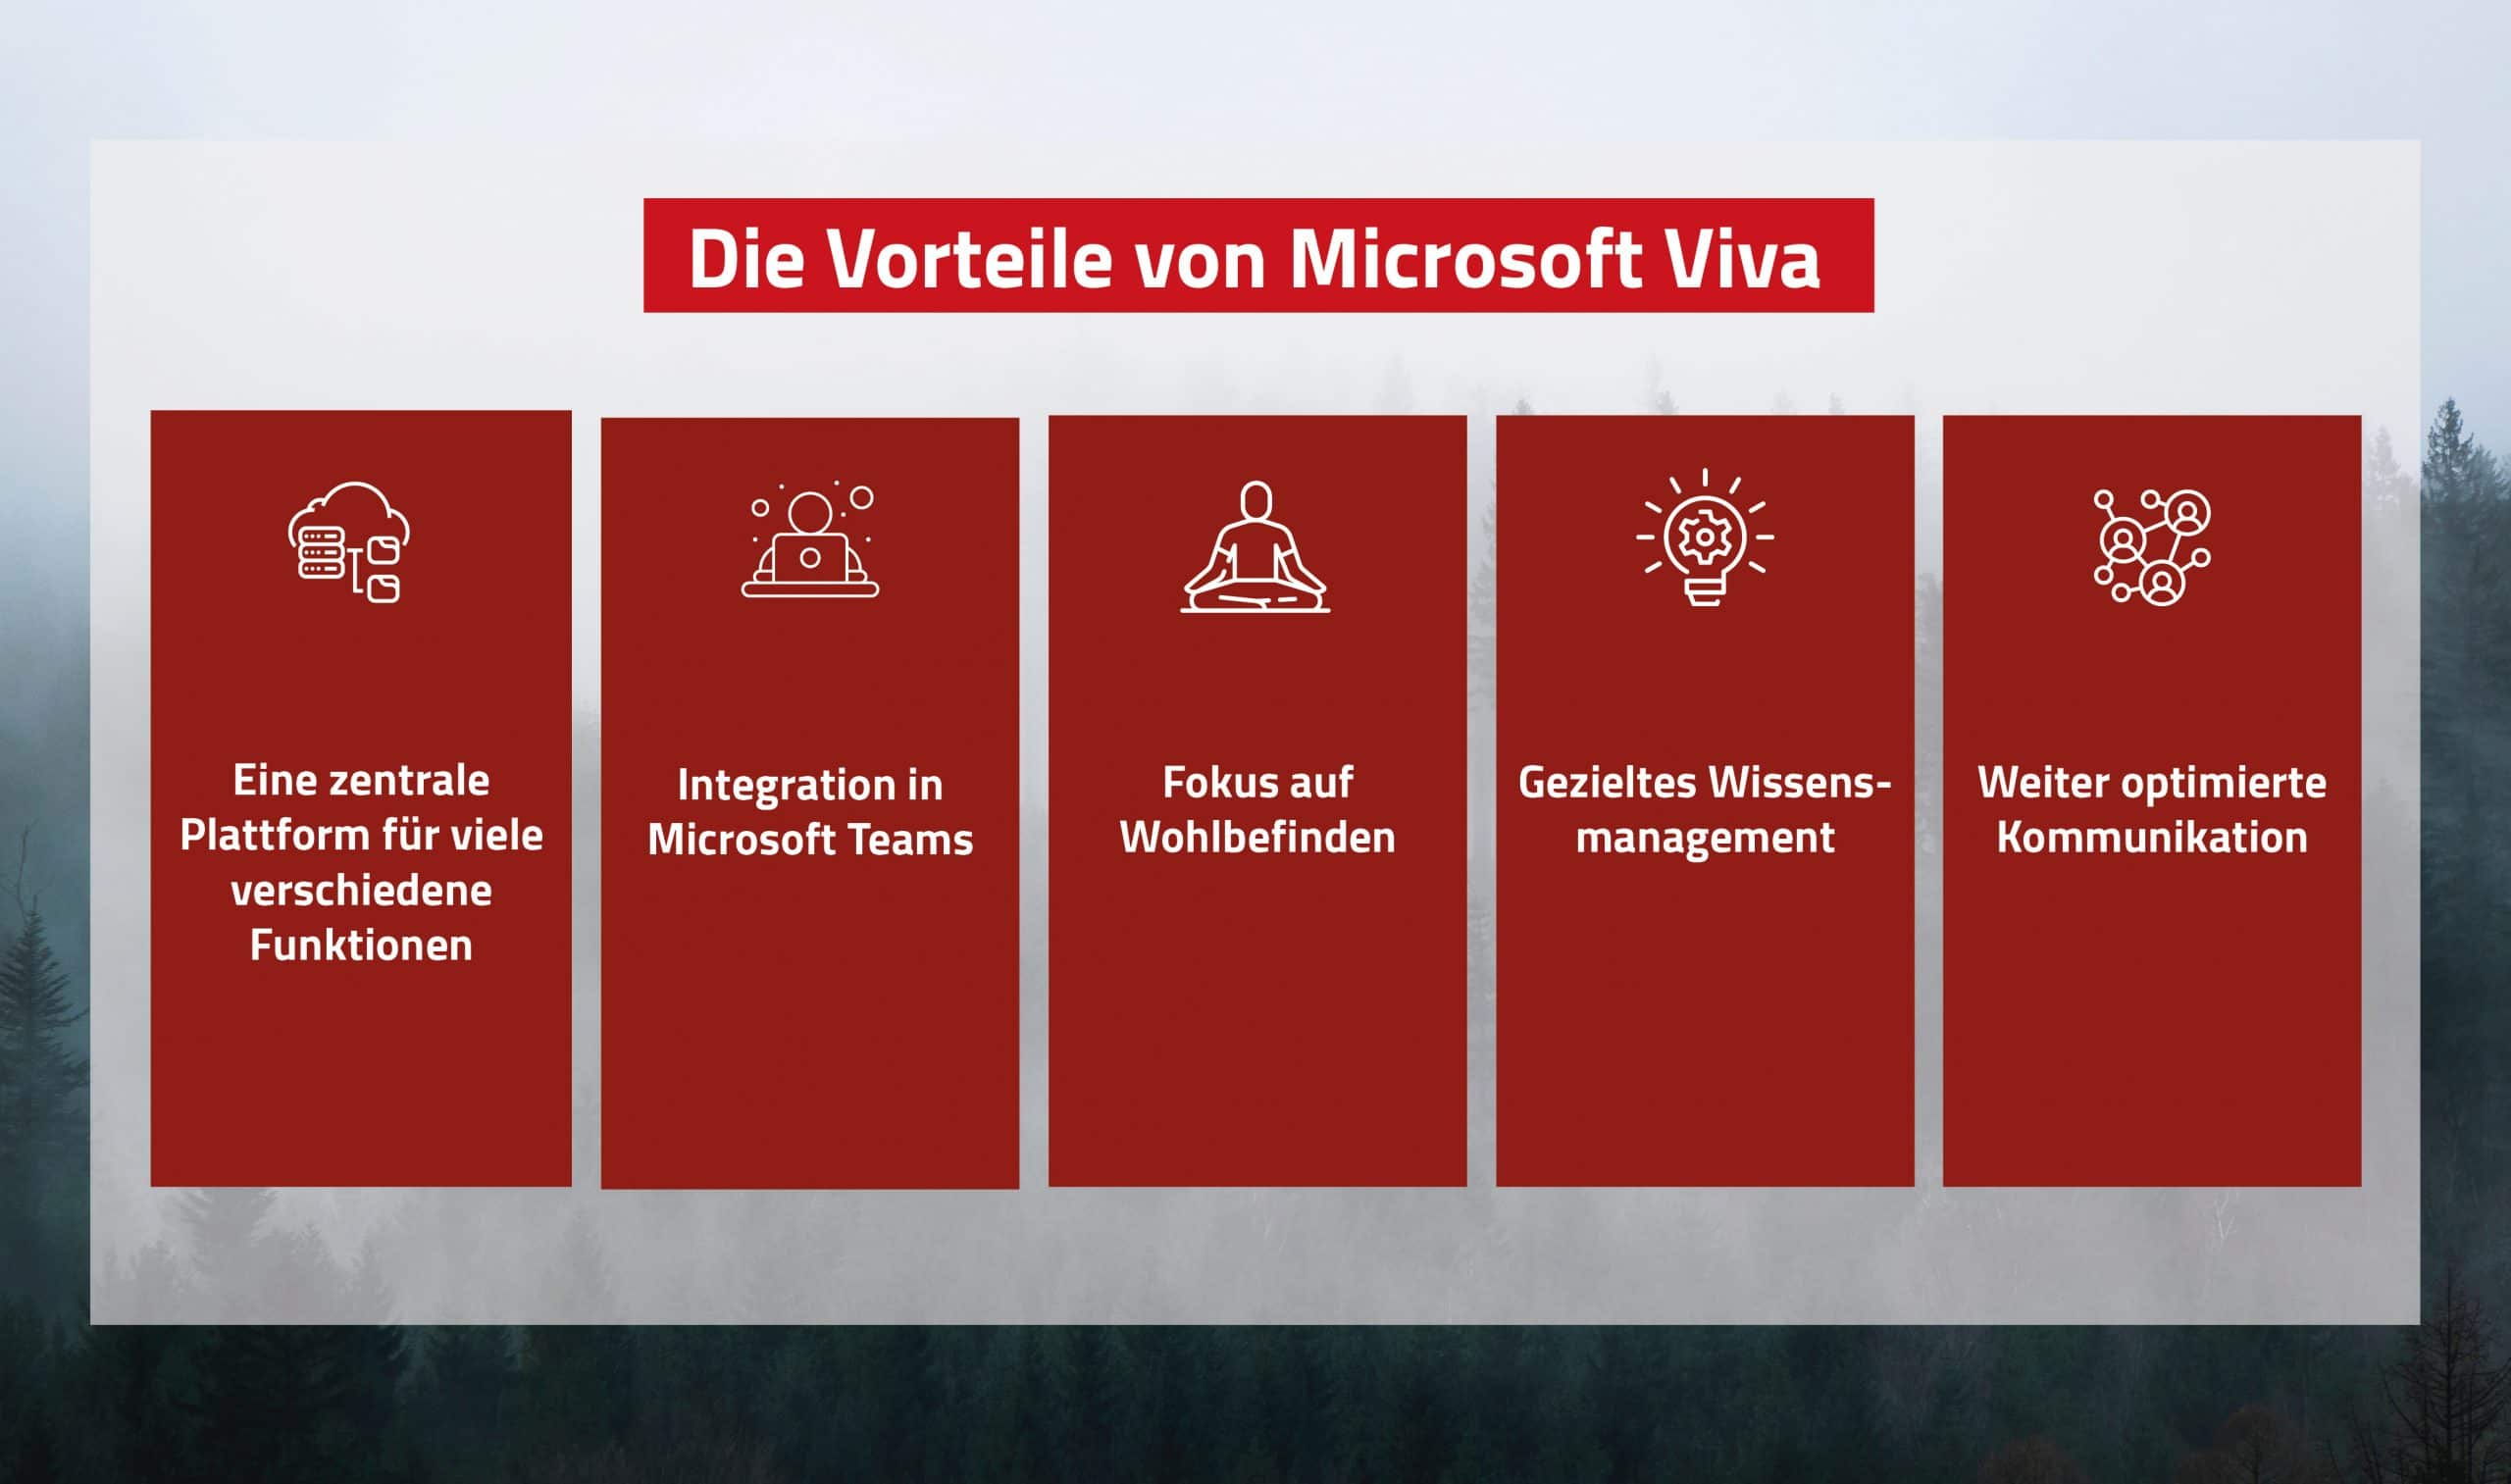 Das sind die Vorteile von Microsoft Viva